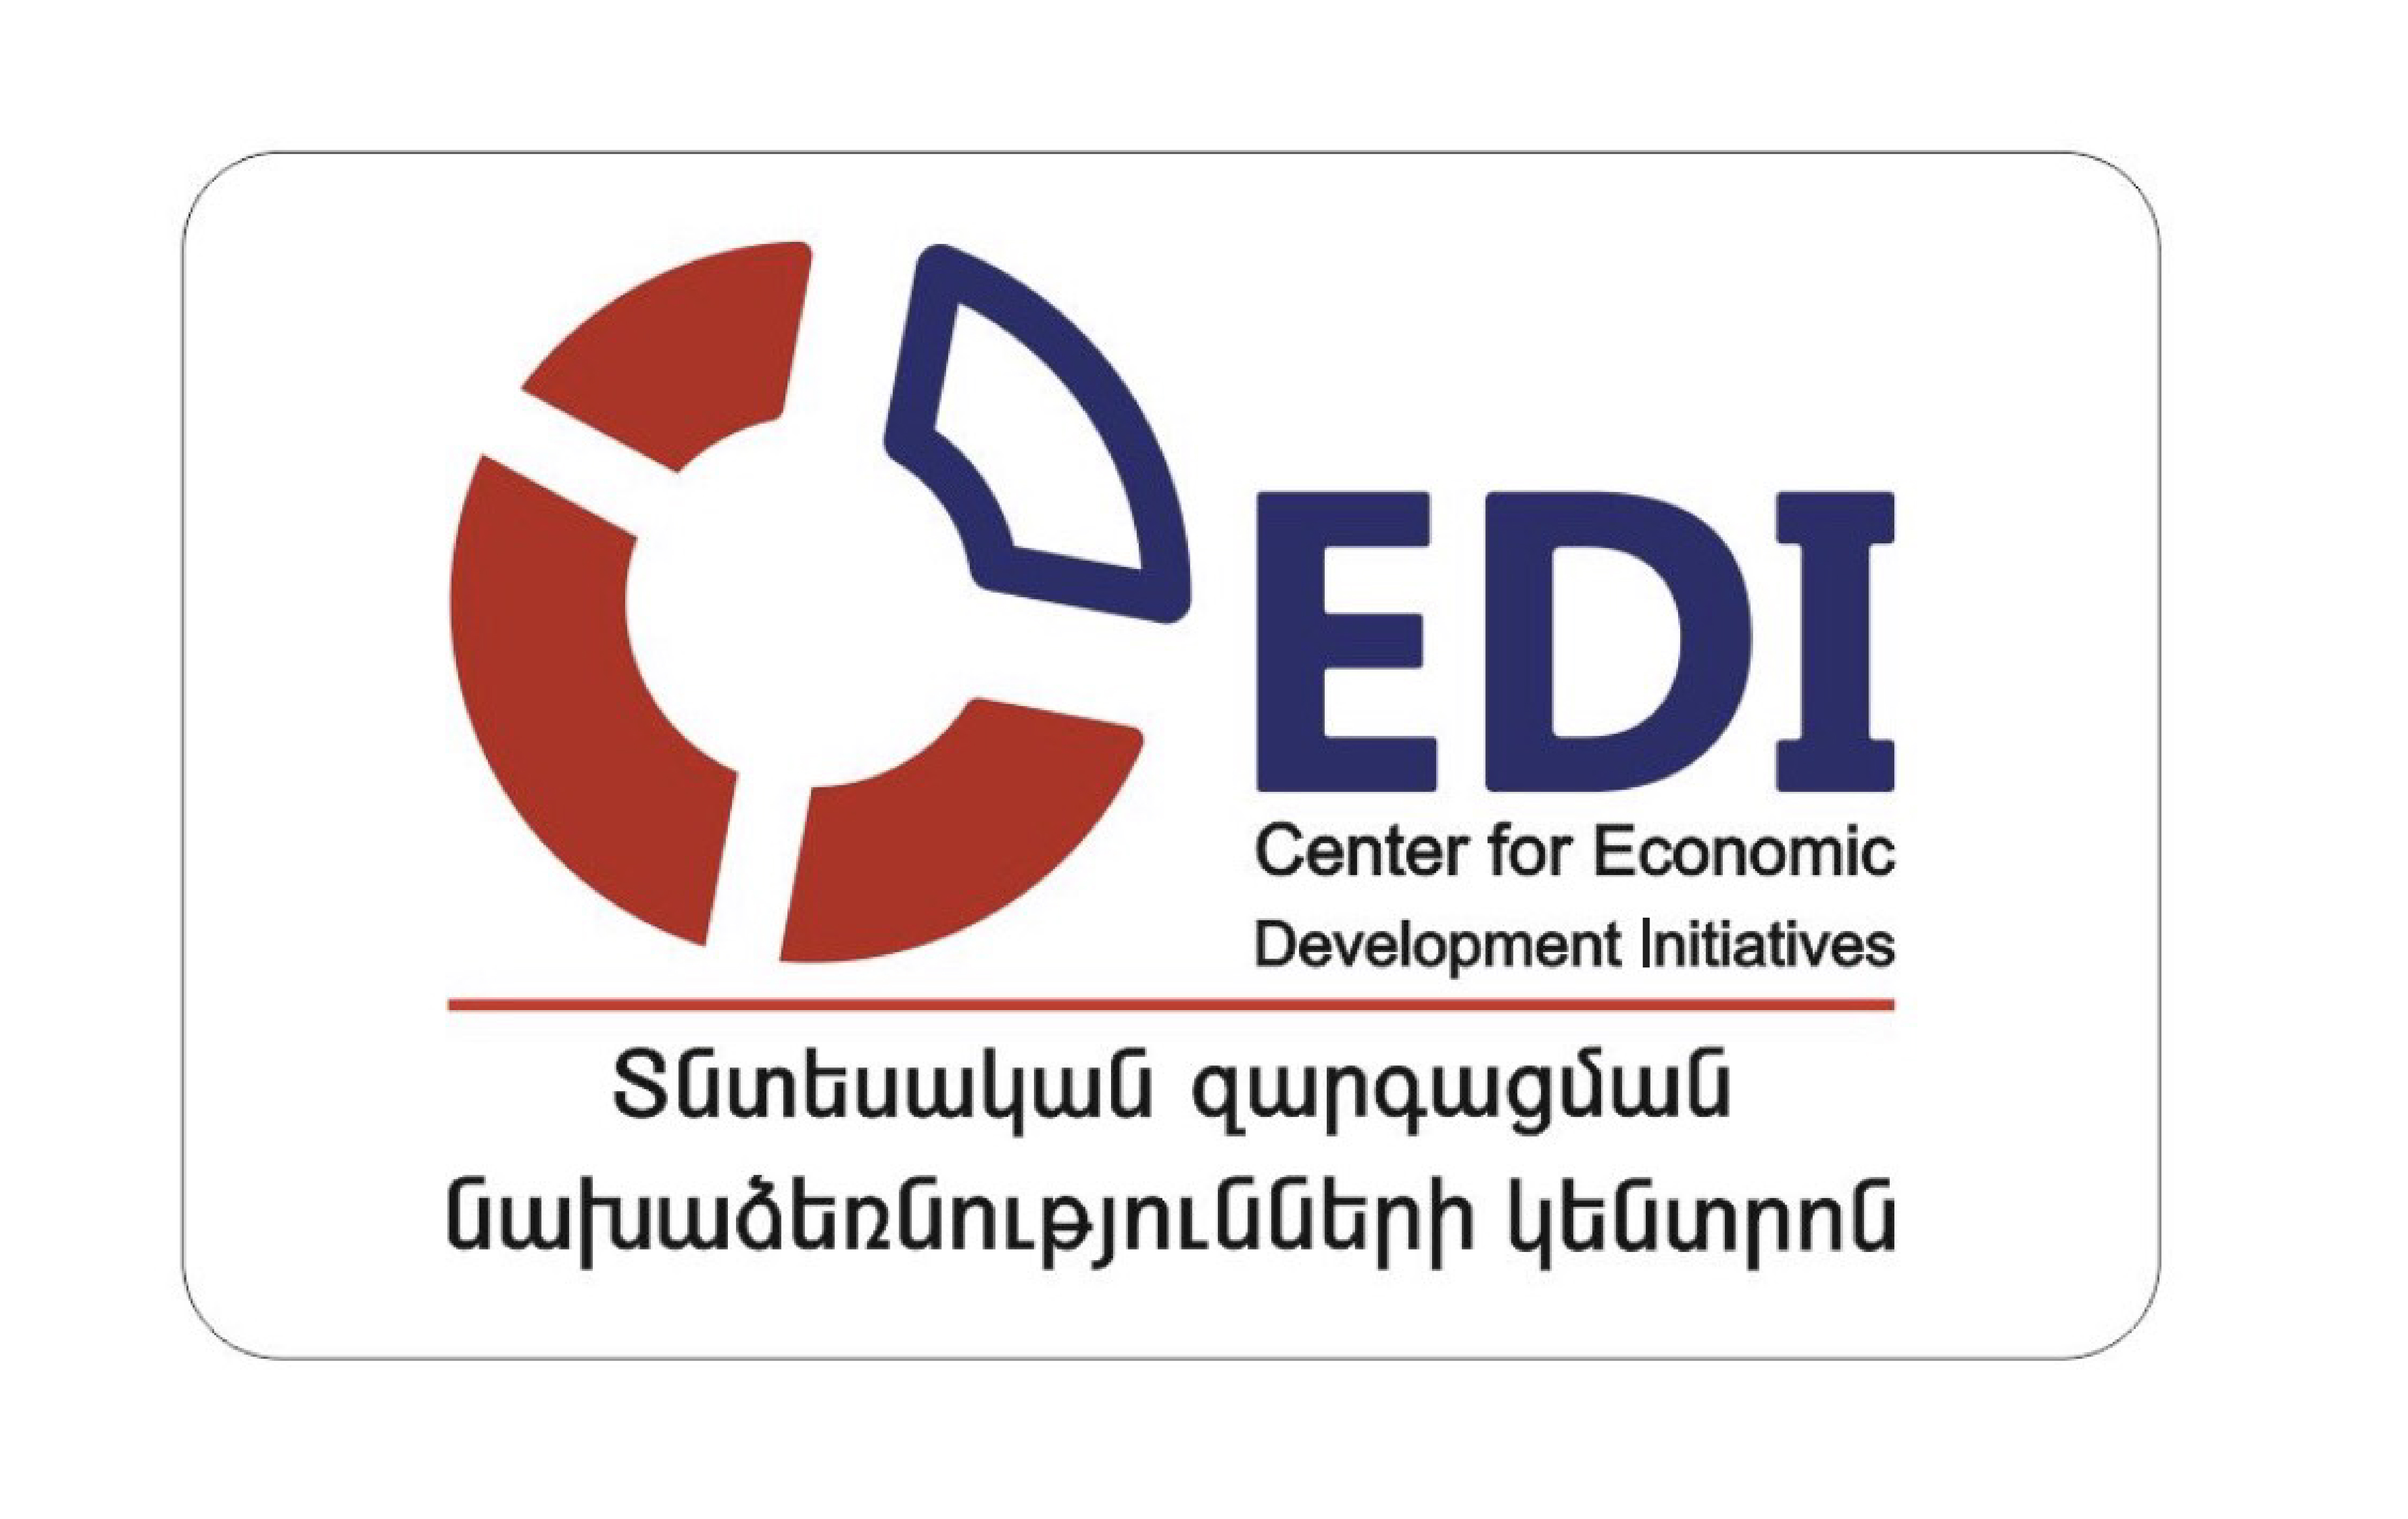 Center for Economic Development Initiatives Местная Неправительственная Организация